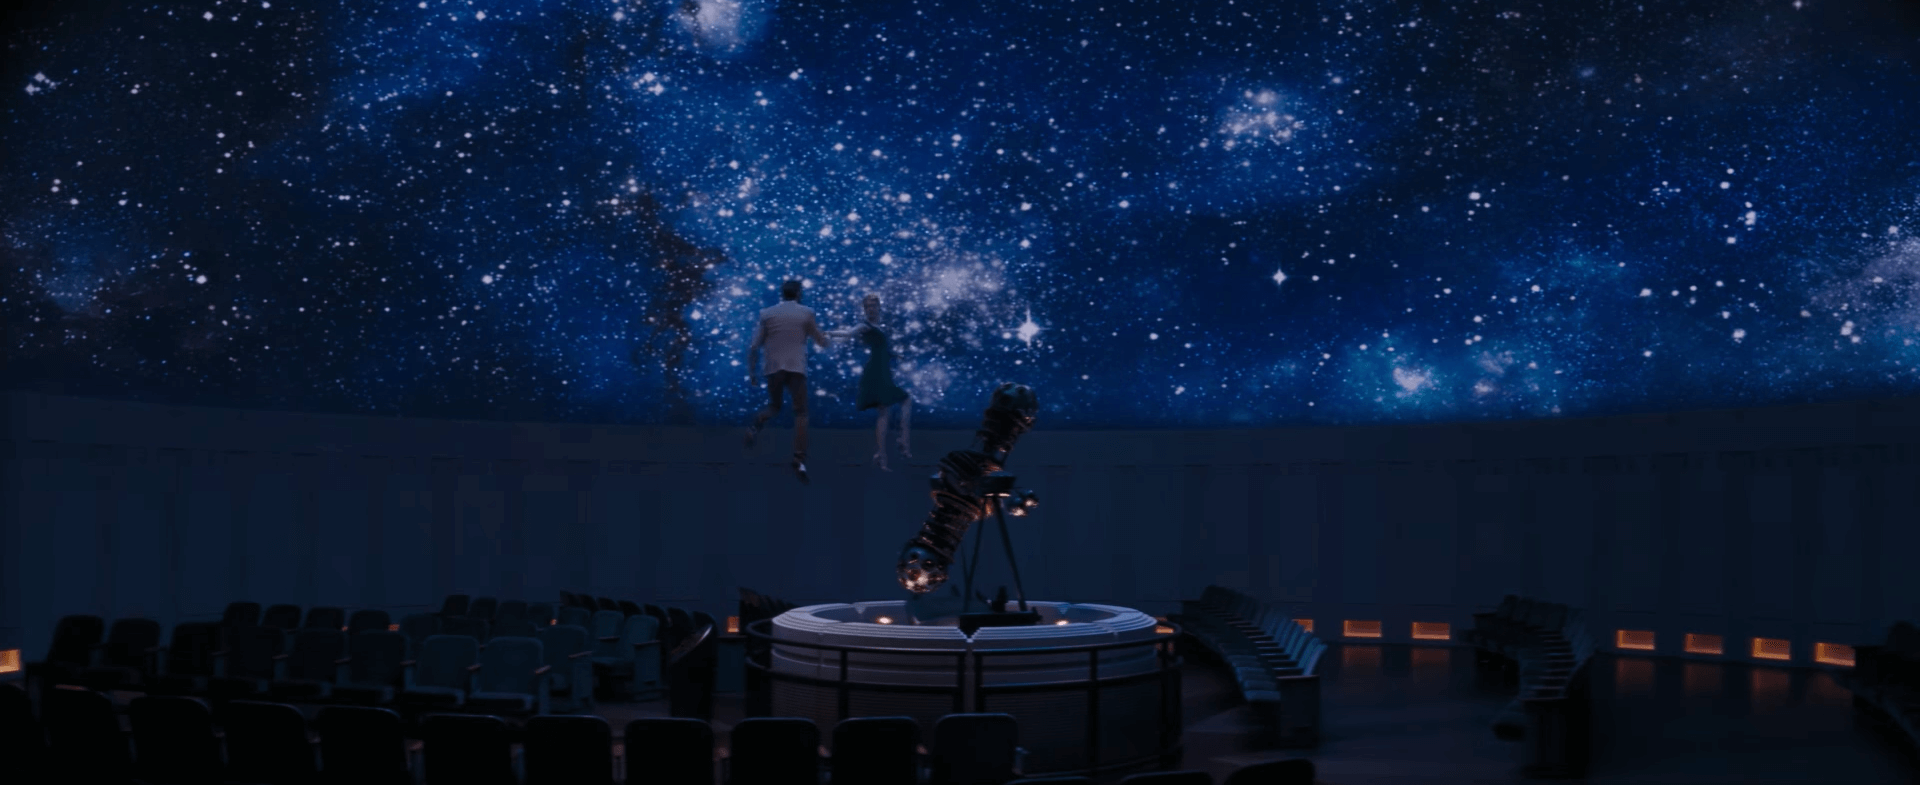 Seb and Mia are lifted into the planetarium's dome.